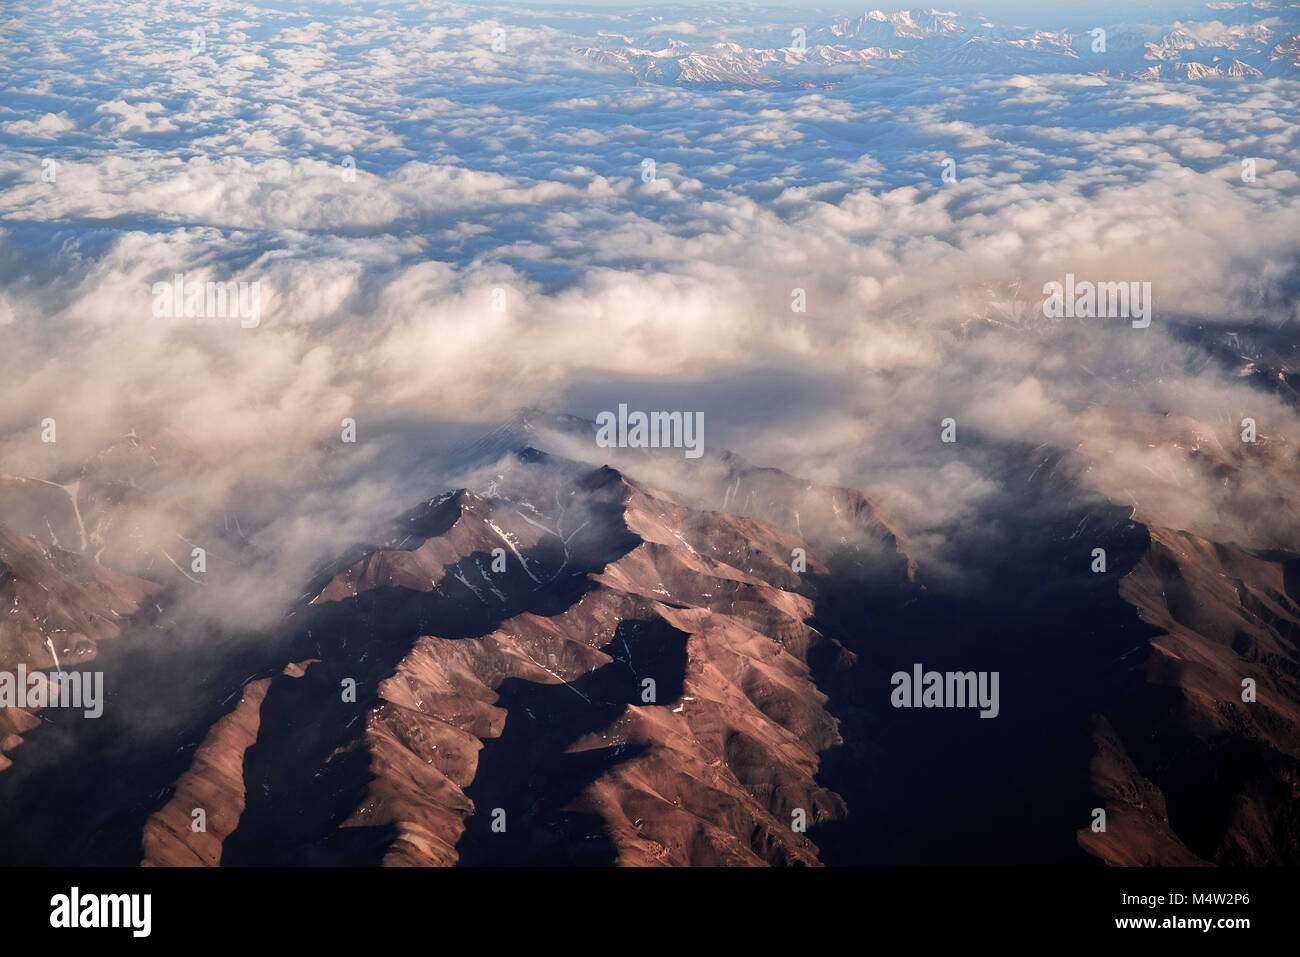 Las imágenes aéreas mientras volaba sobre partes de la Argentina. Foto de stock